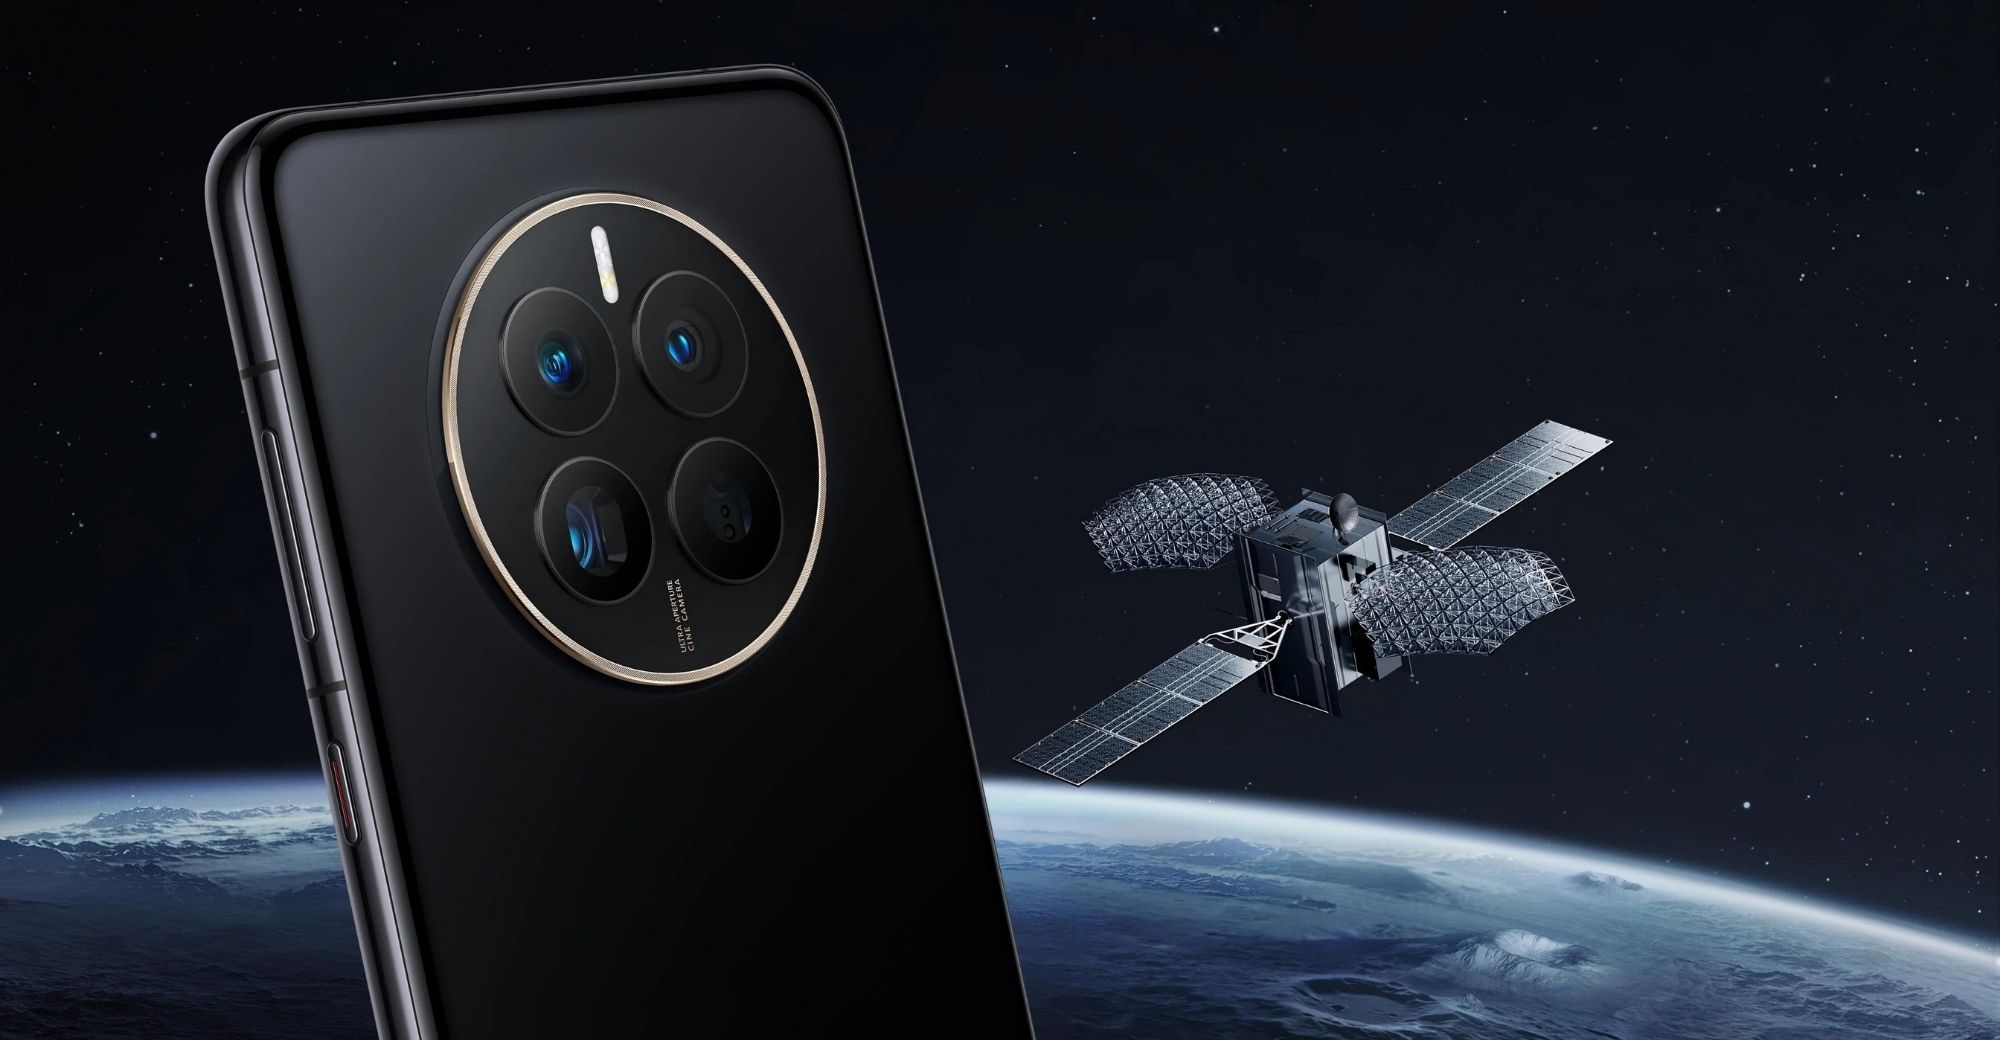 หัวเว่ยเปิดตัวสมาร์ทโฟนตระกูล Mate 50 ซึ่งมีทั้งหมด 4 รุ่น สามารถเชื่อมต่อกับดาวเทียม Beidou ได้